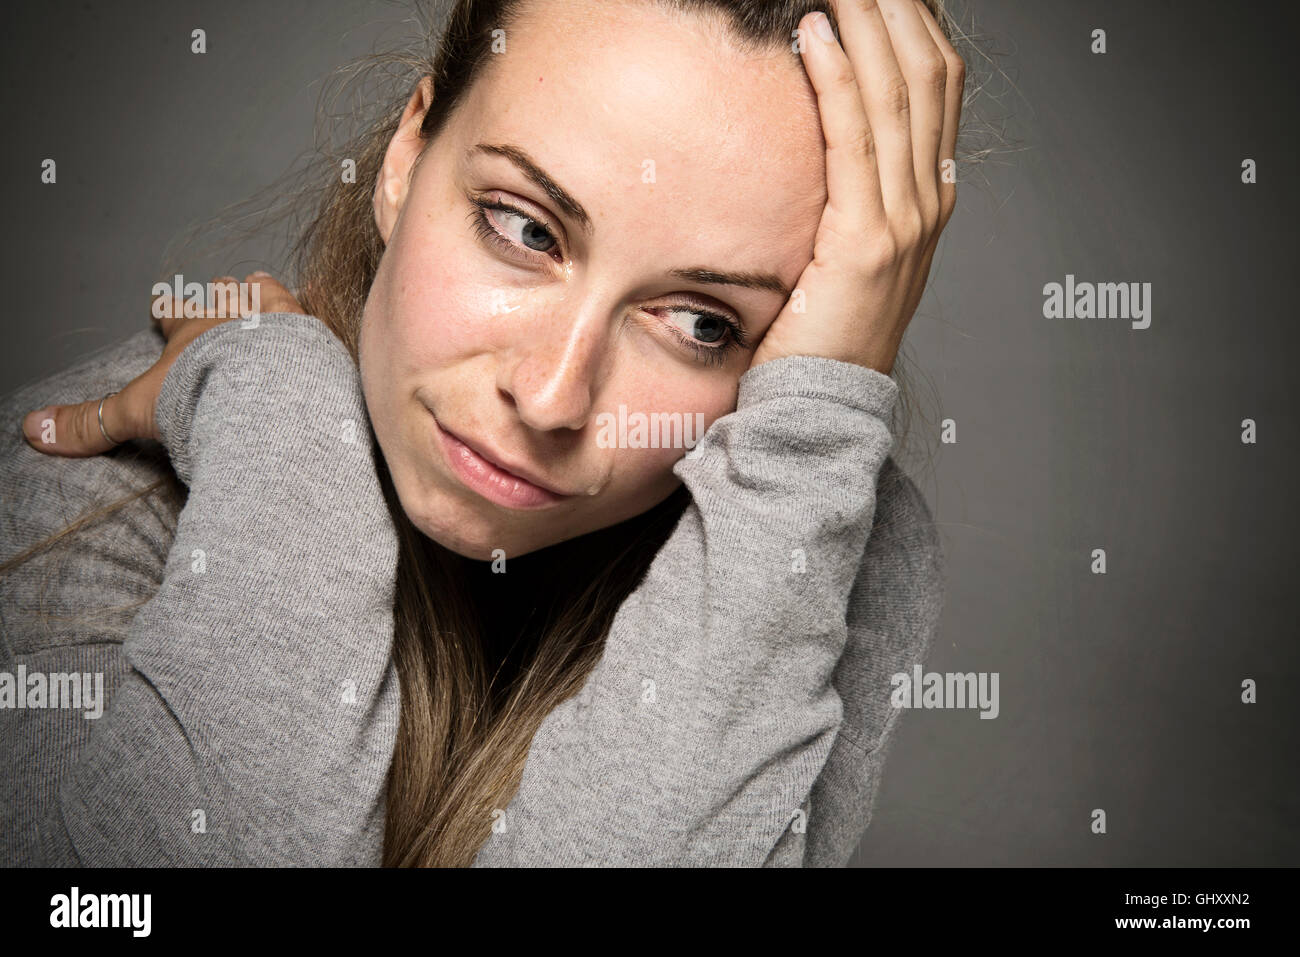 Traurig, dass Frau weint Tränen rannen Gesicht Nahaufnahme junge hand auf Kopf Traurigkeit Konzept Stockfoto